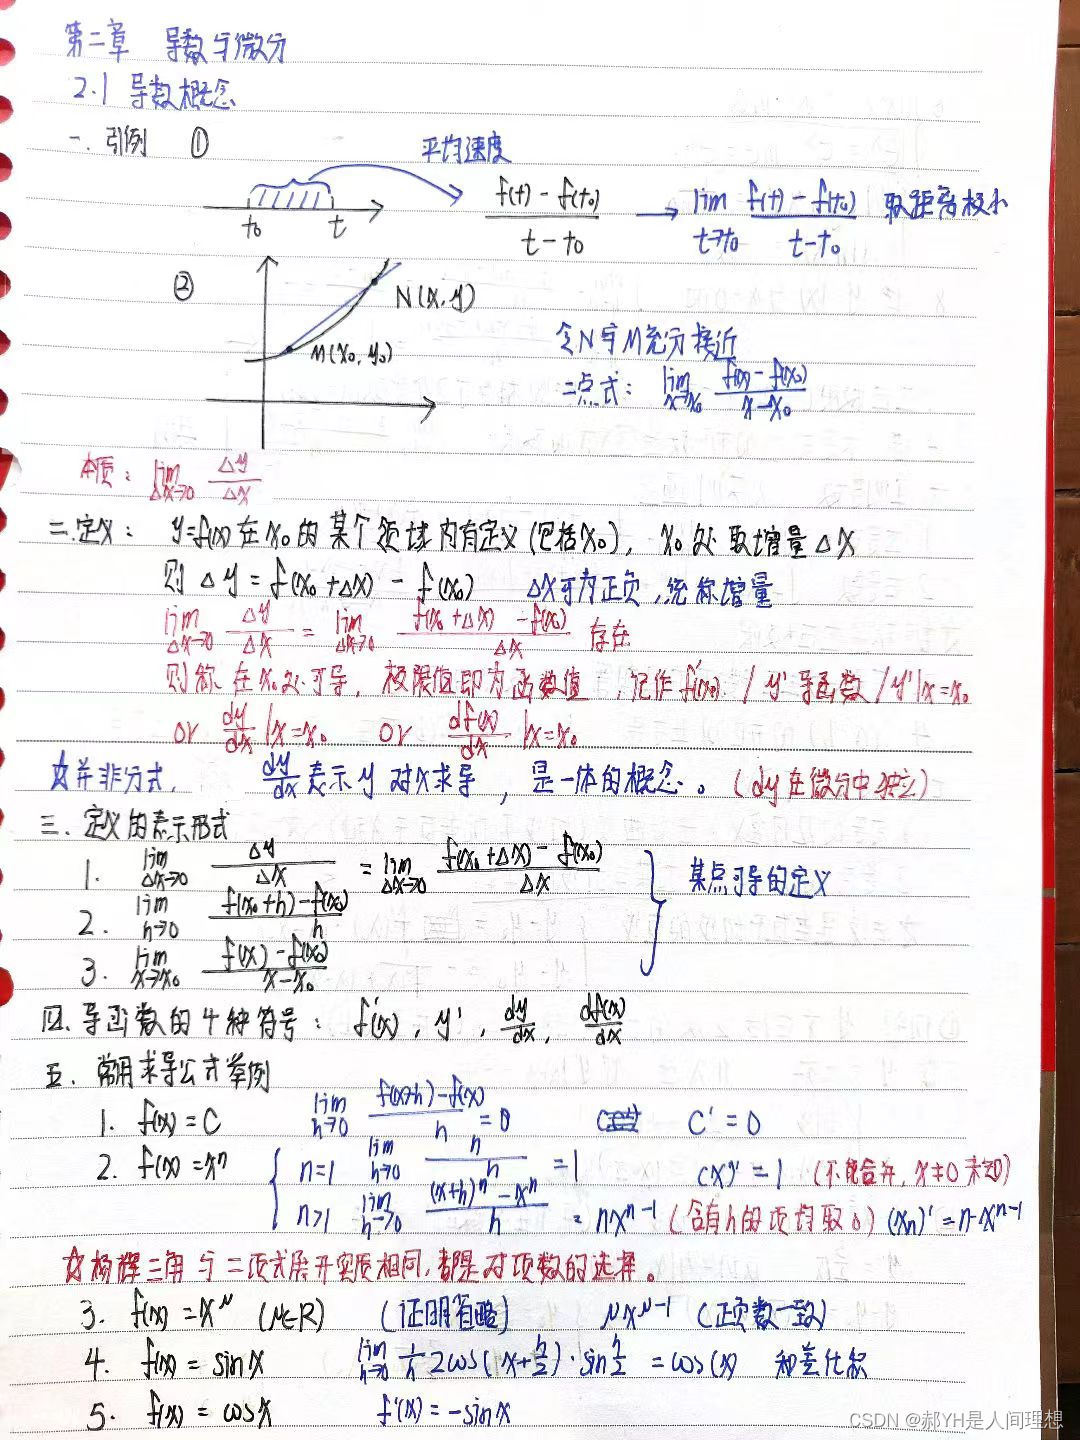 宋浩高等数学笔记(二)导数与微分